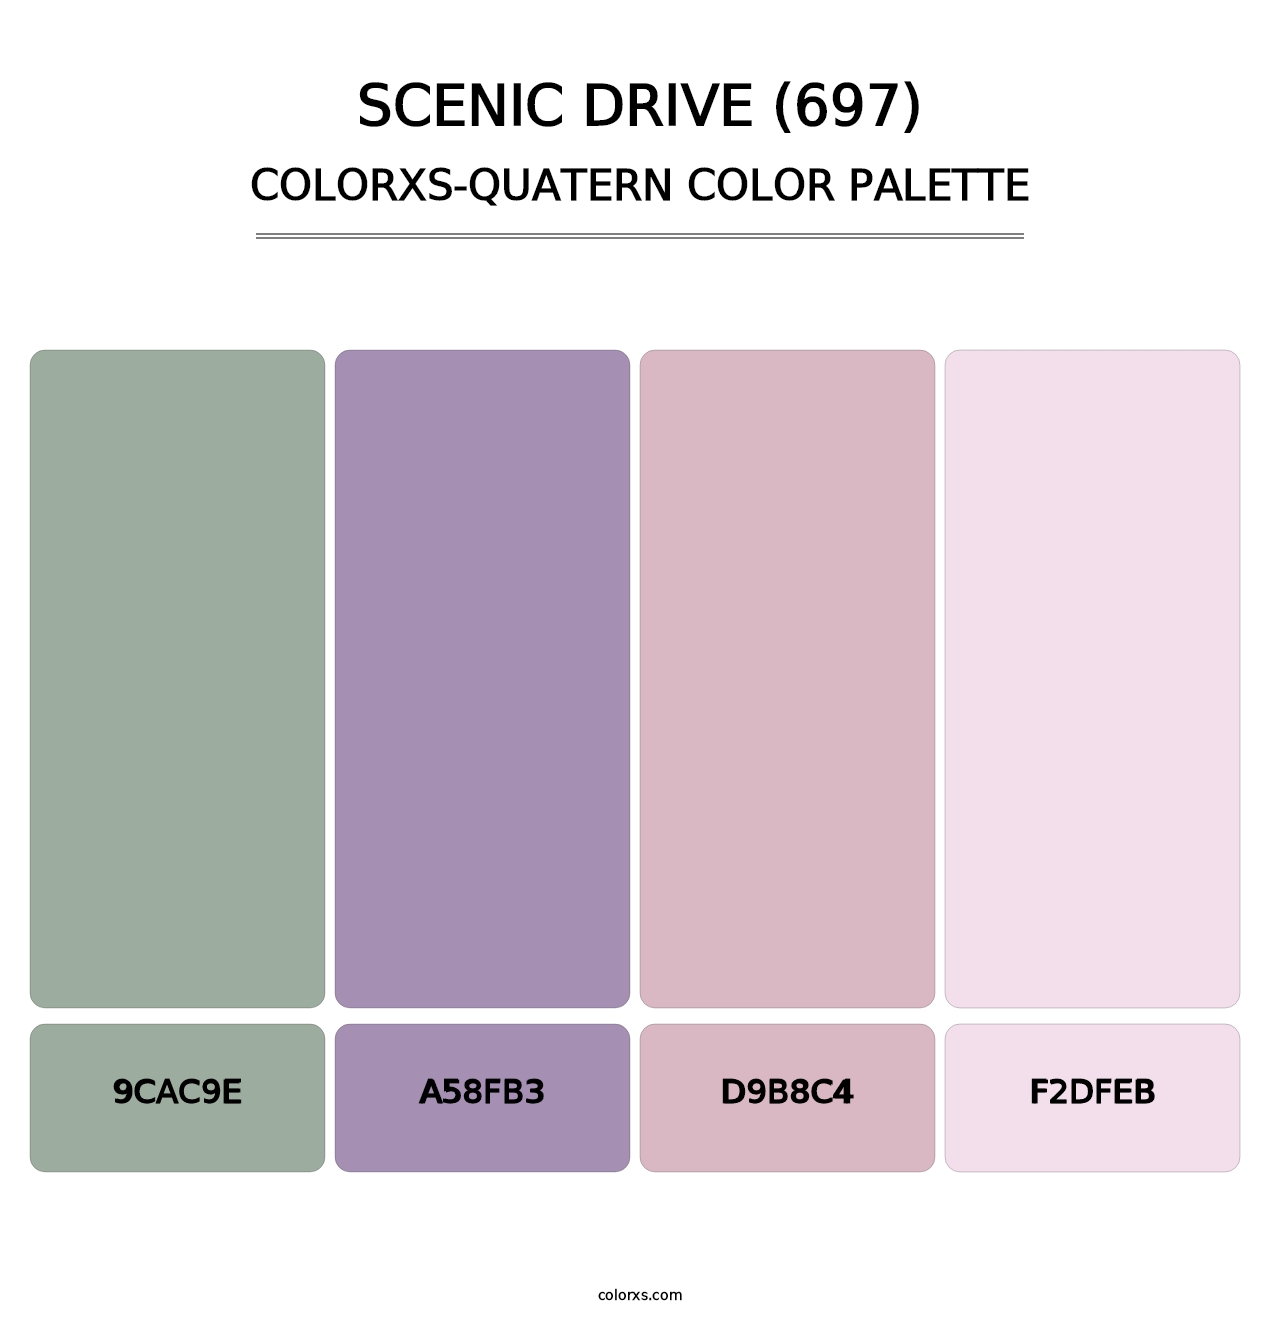 Scenic Drive (697) - Colorxs Quatern Palette